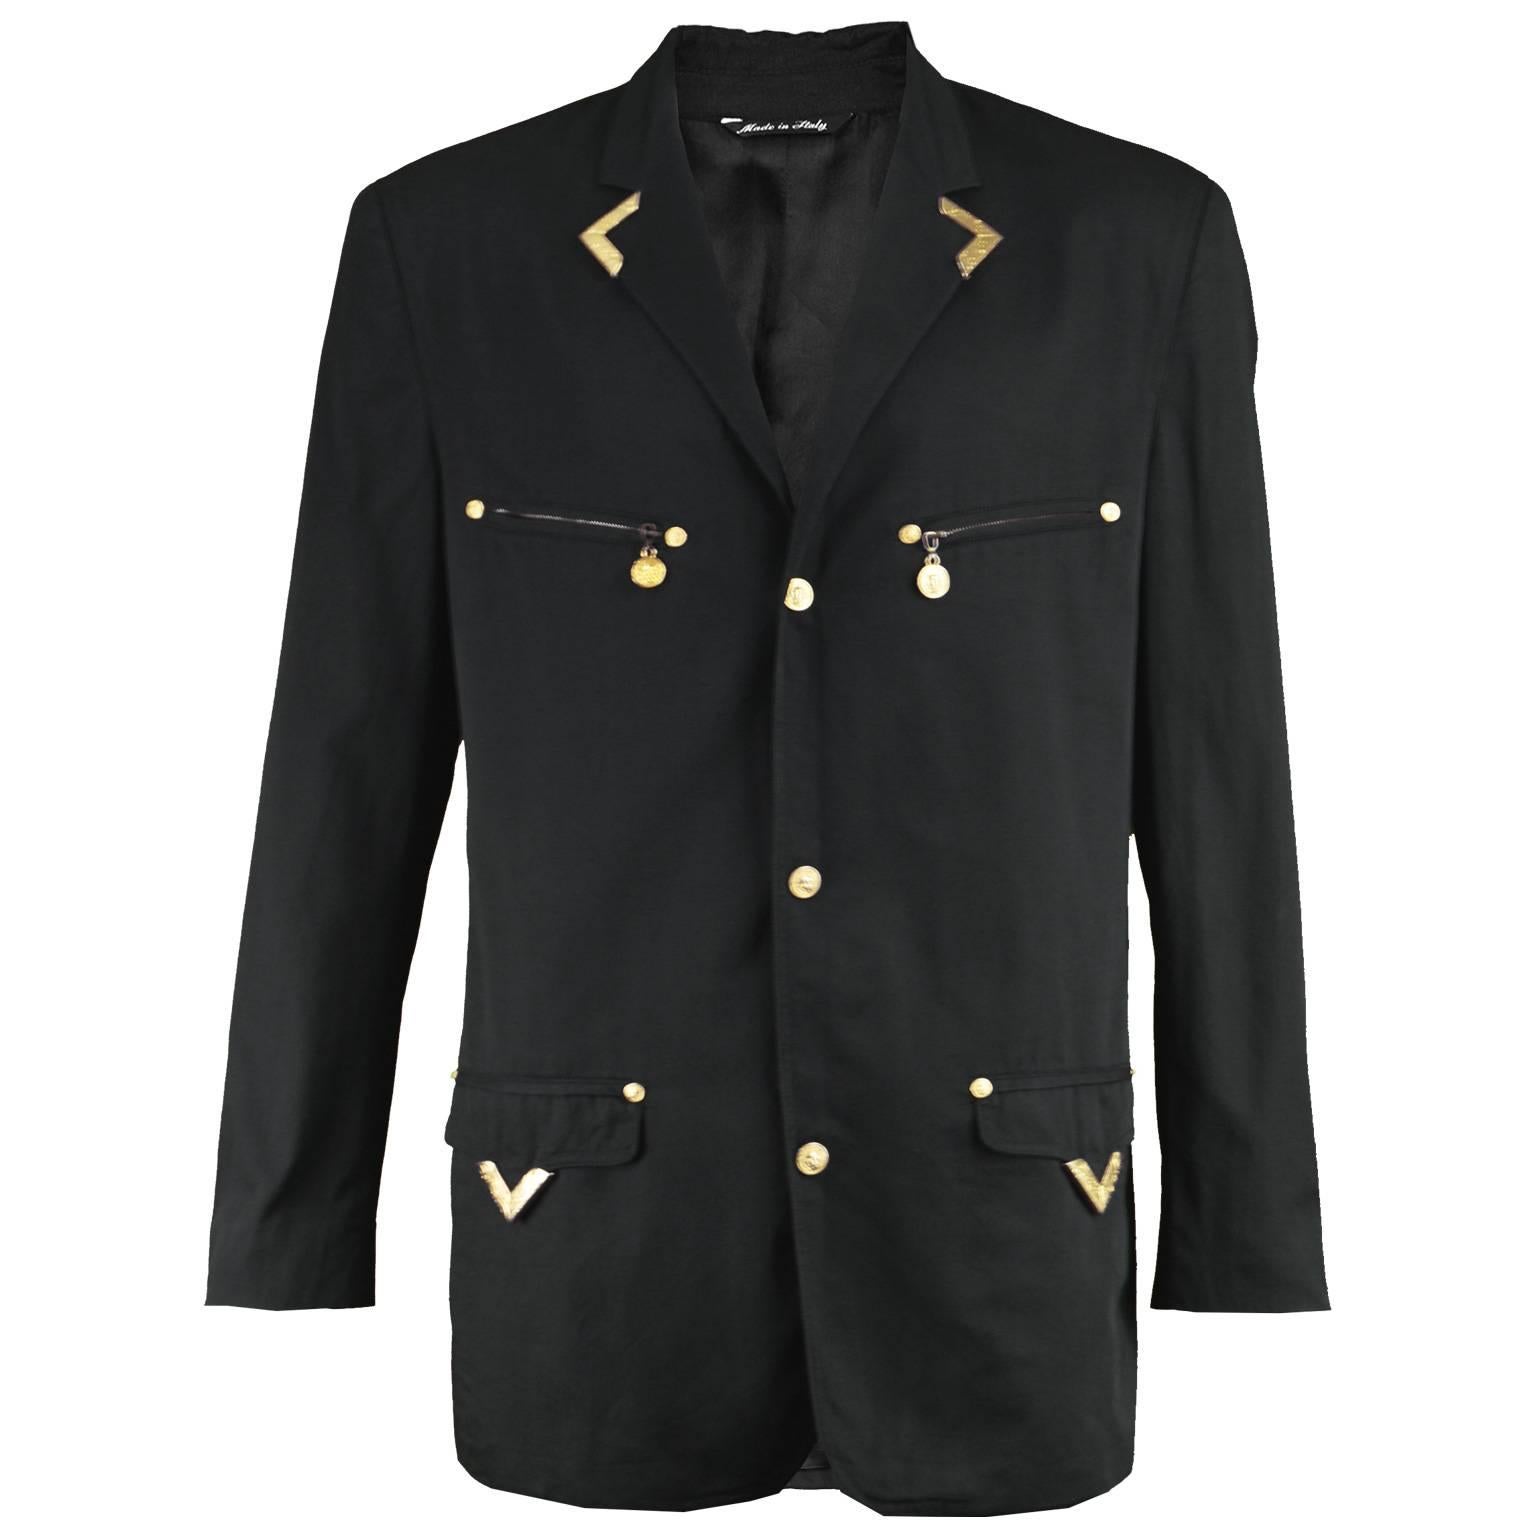 Gianni Versace Versus Vintage 1990's Men's Rare S & M Black & Gold Cotton Blazer For Sale